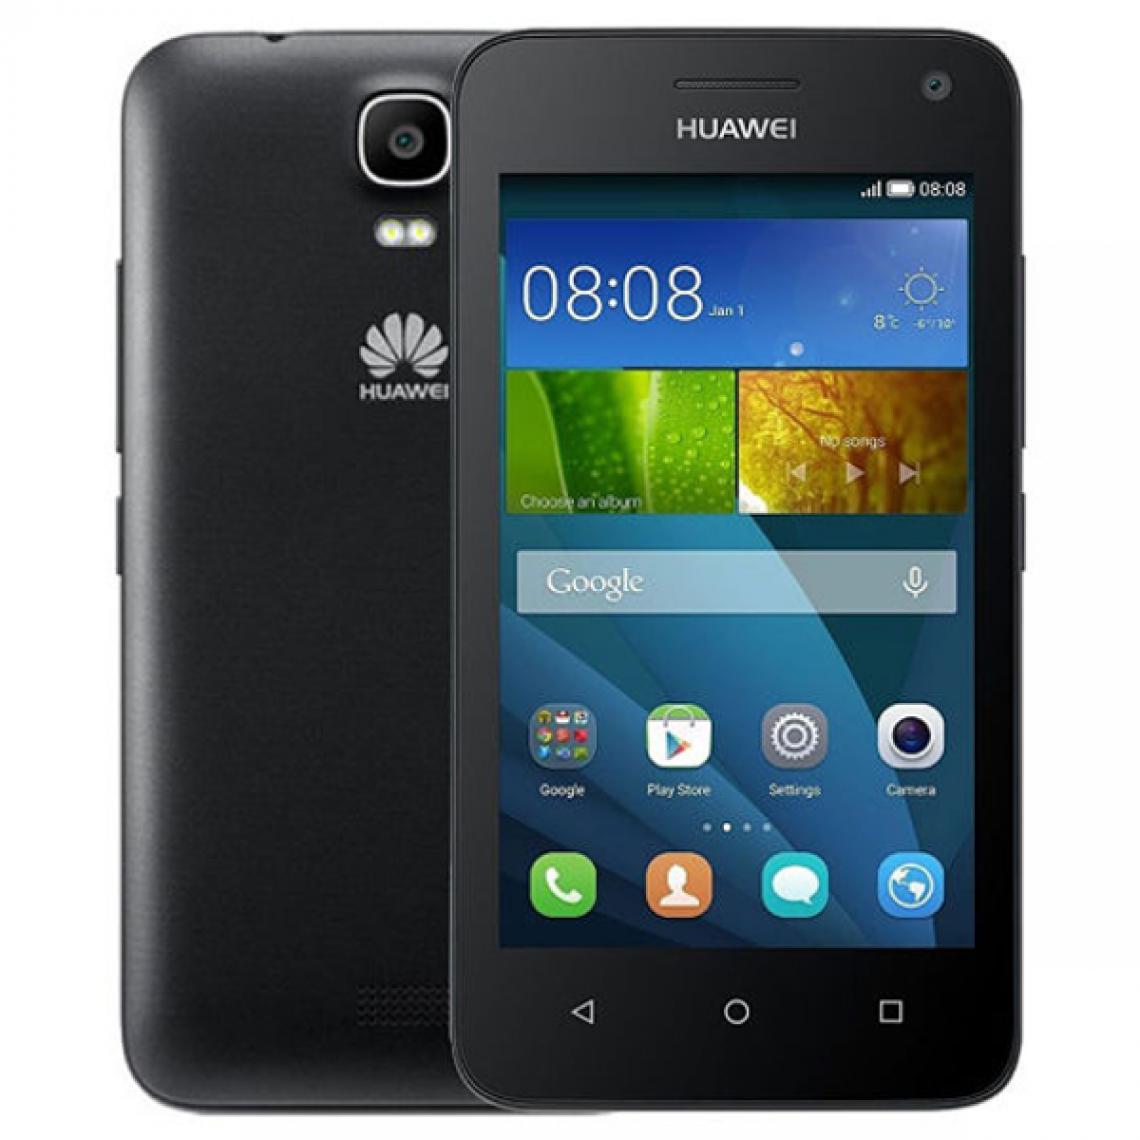 Huawei - Huawei Y3 Y360 Noir - Smartphone Android